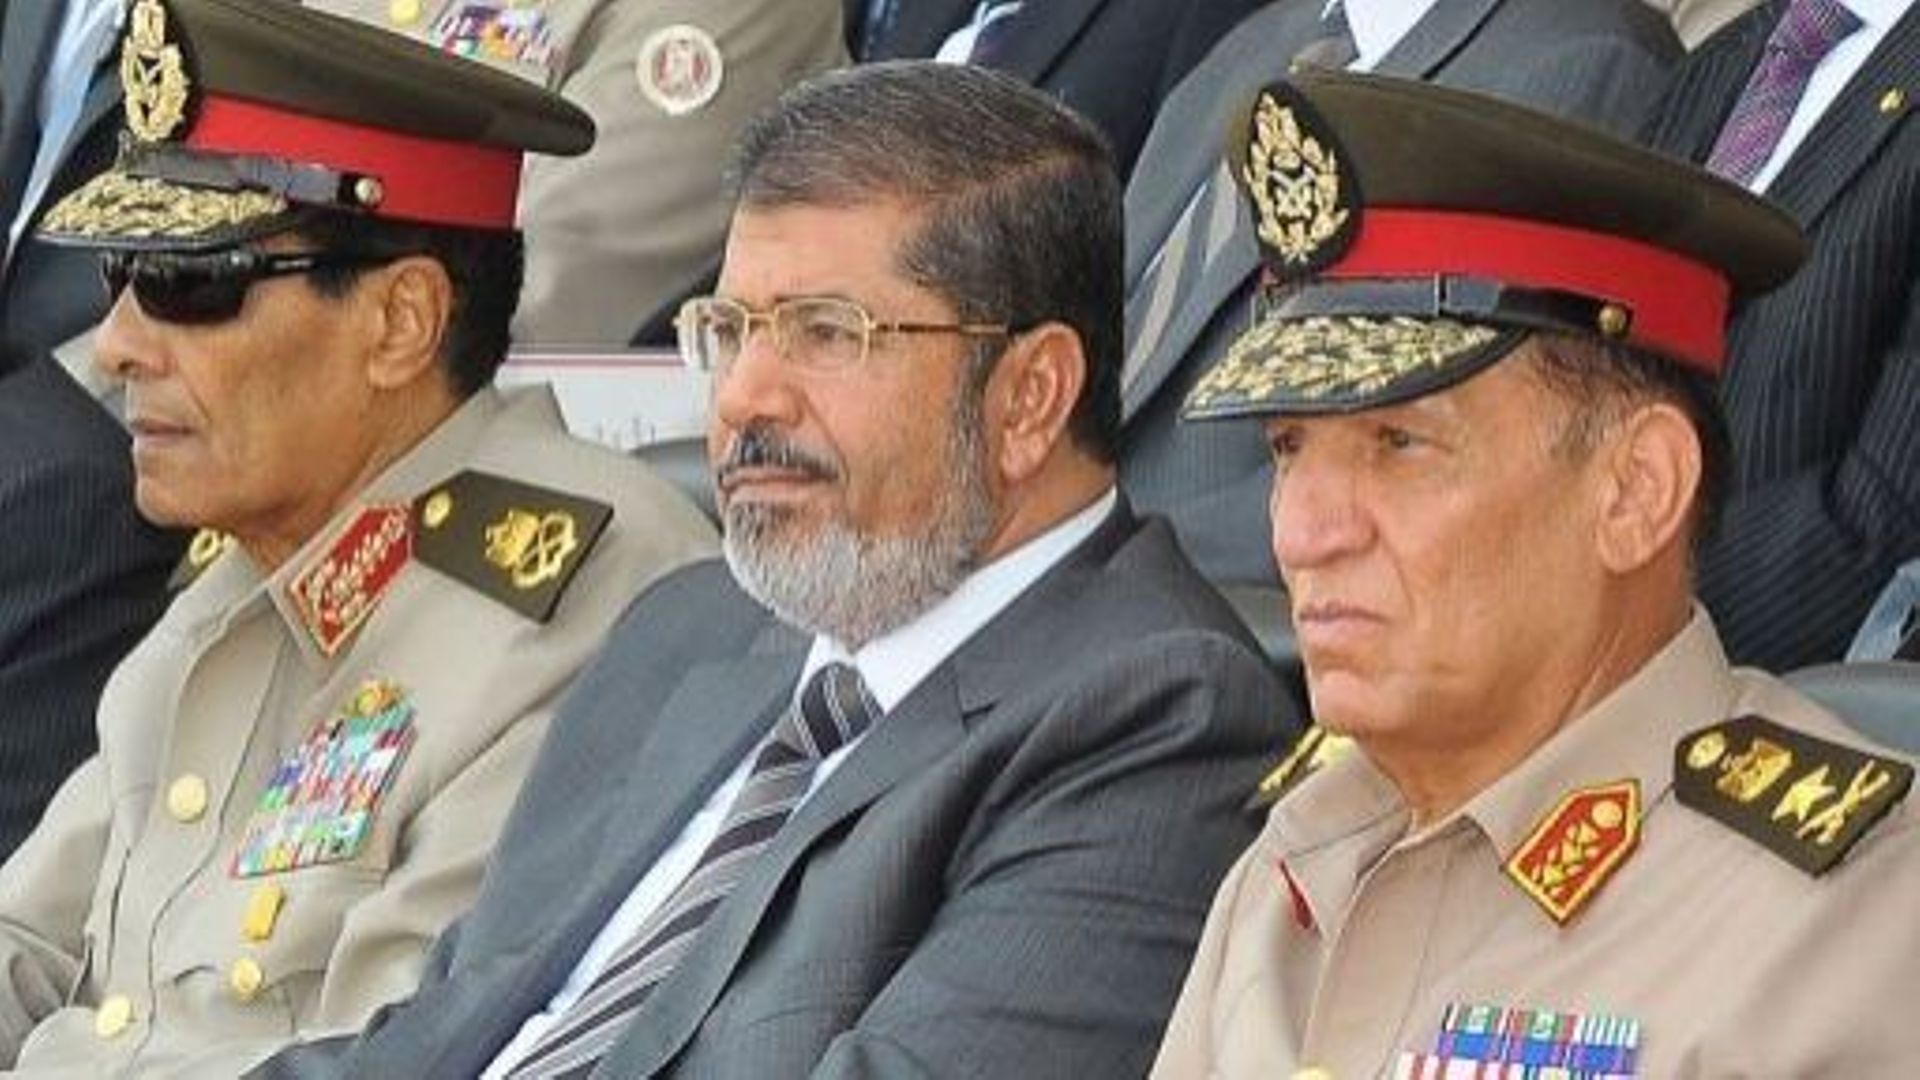 Le président égyptien Mohamed Morsi assiste à une cérémonie, le 9 juillet 2012 au Caire